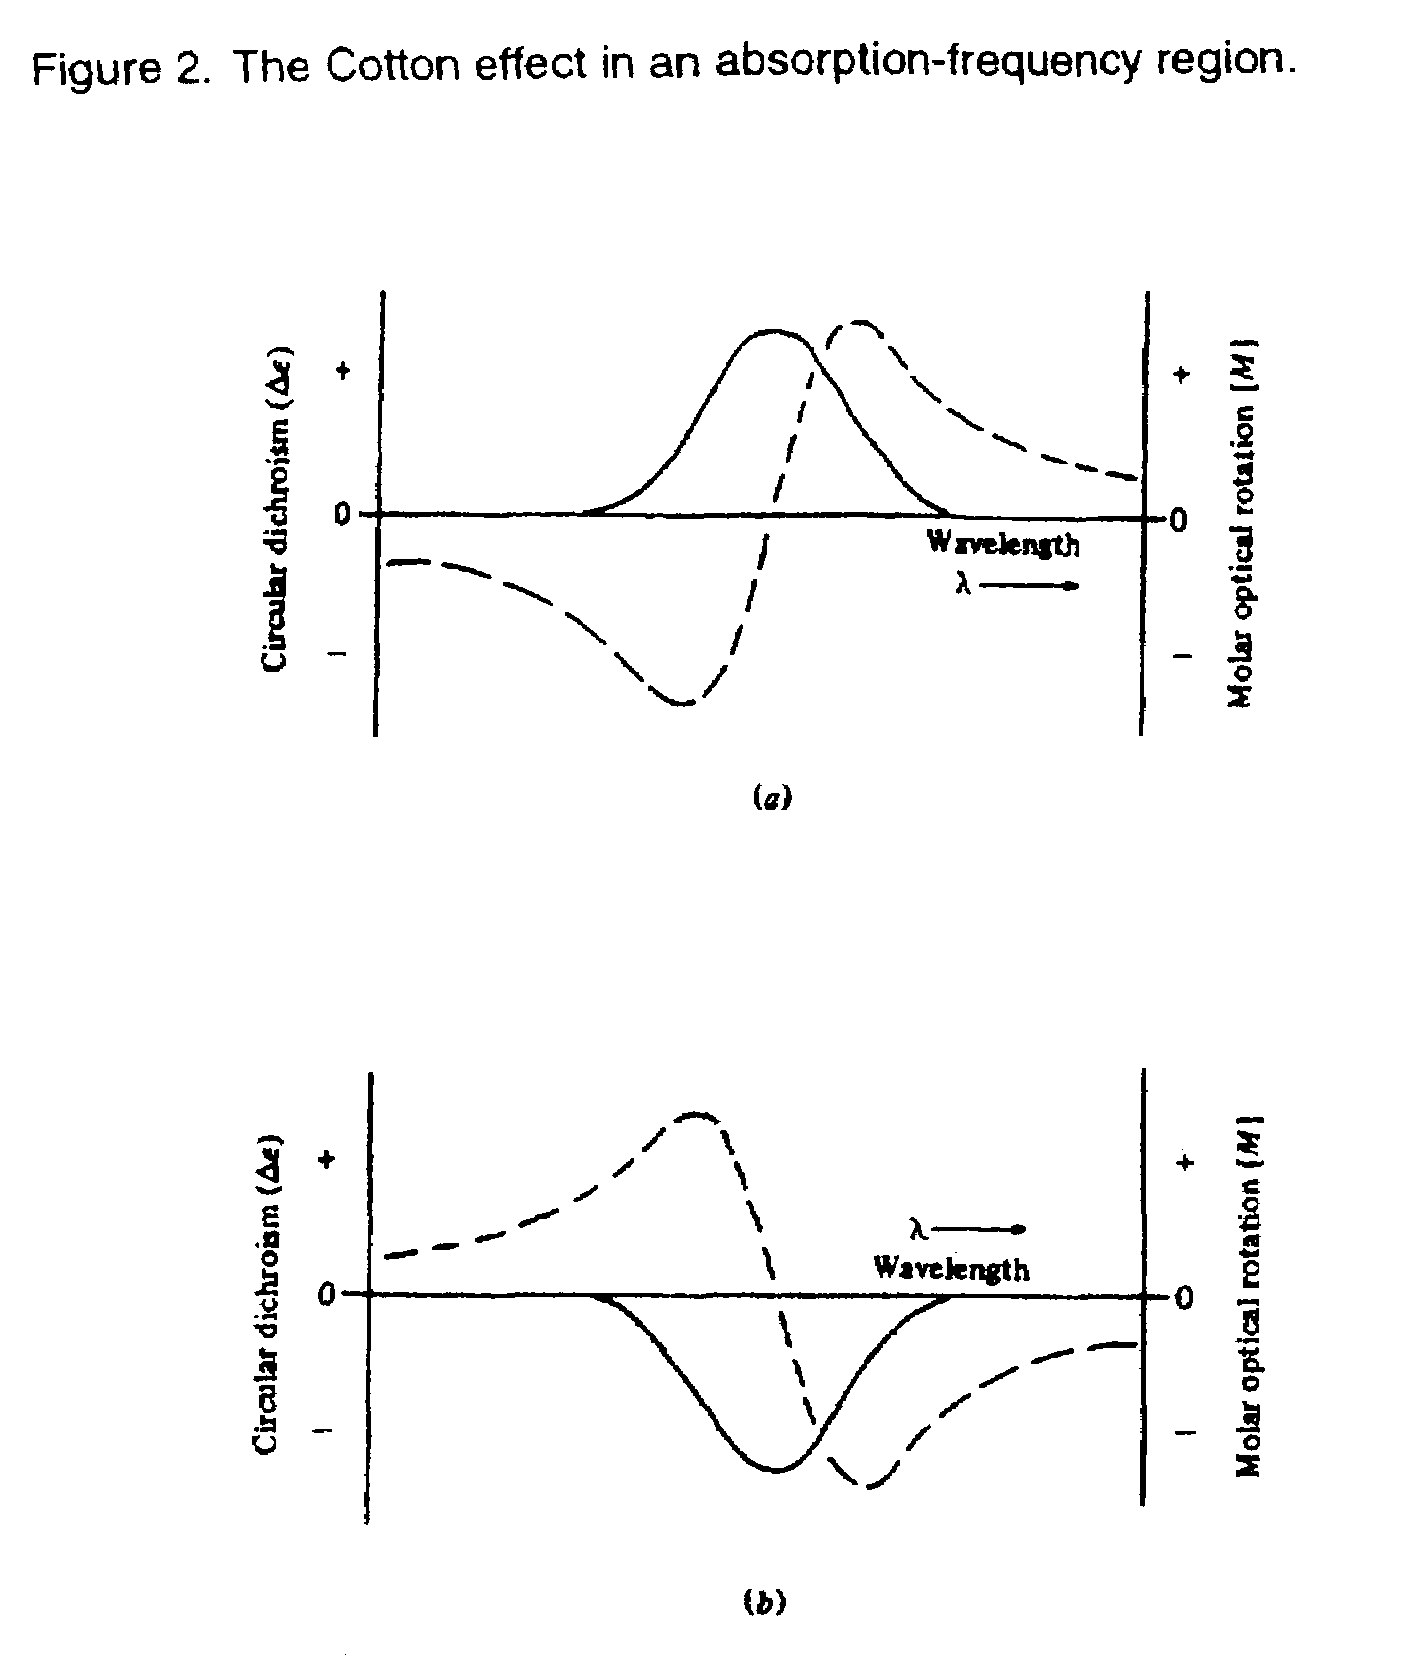 Optical isomer separation method